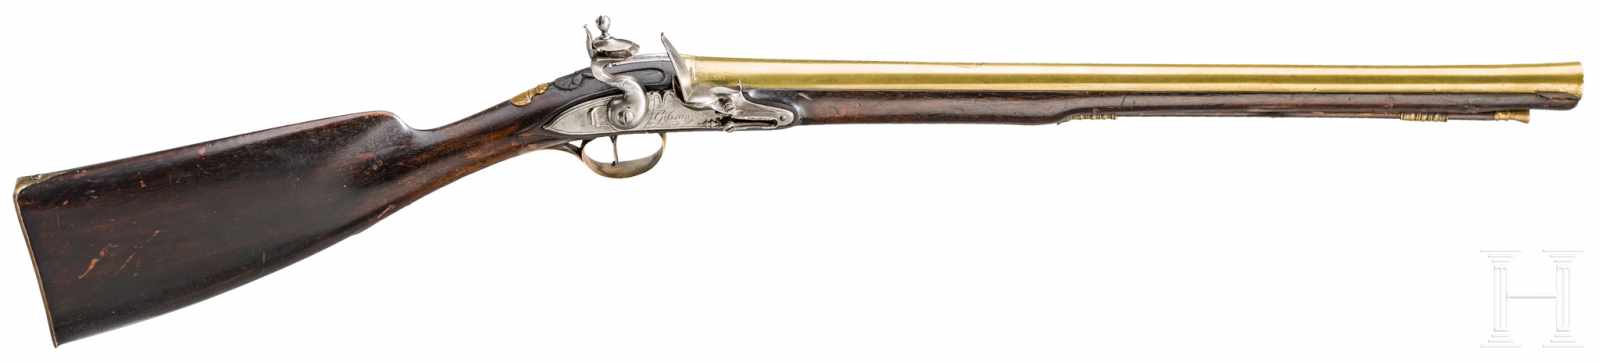 Kutschergewehr mit Messinglauf, Thomas Gibson, London, um 1780Glatter Messinglauf mit leicht